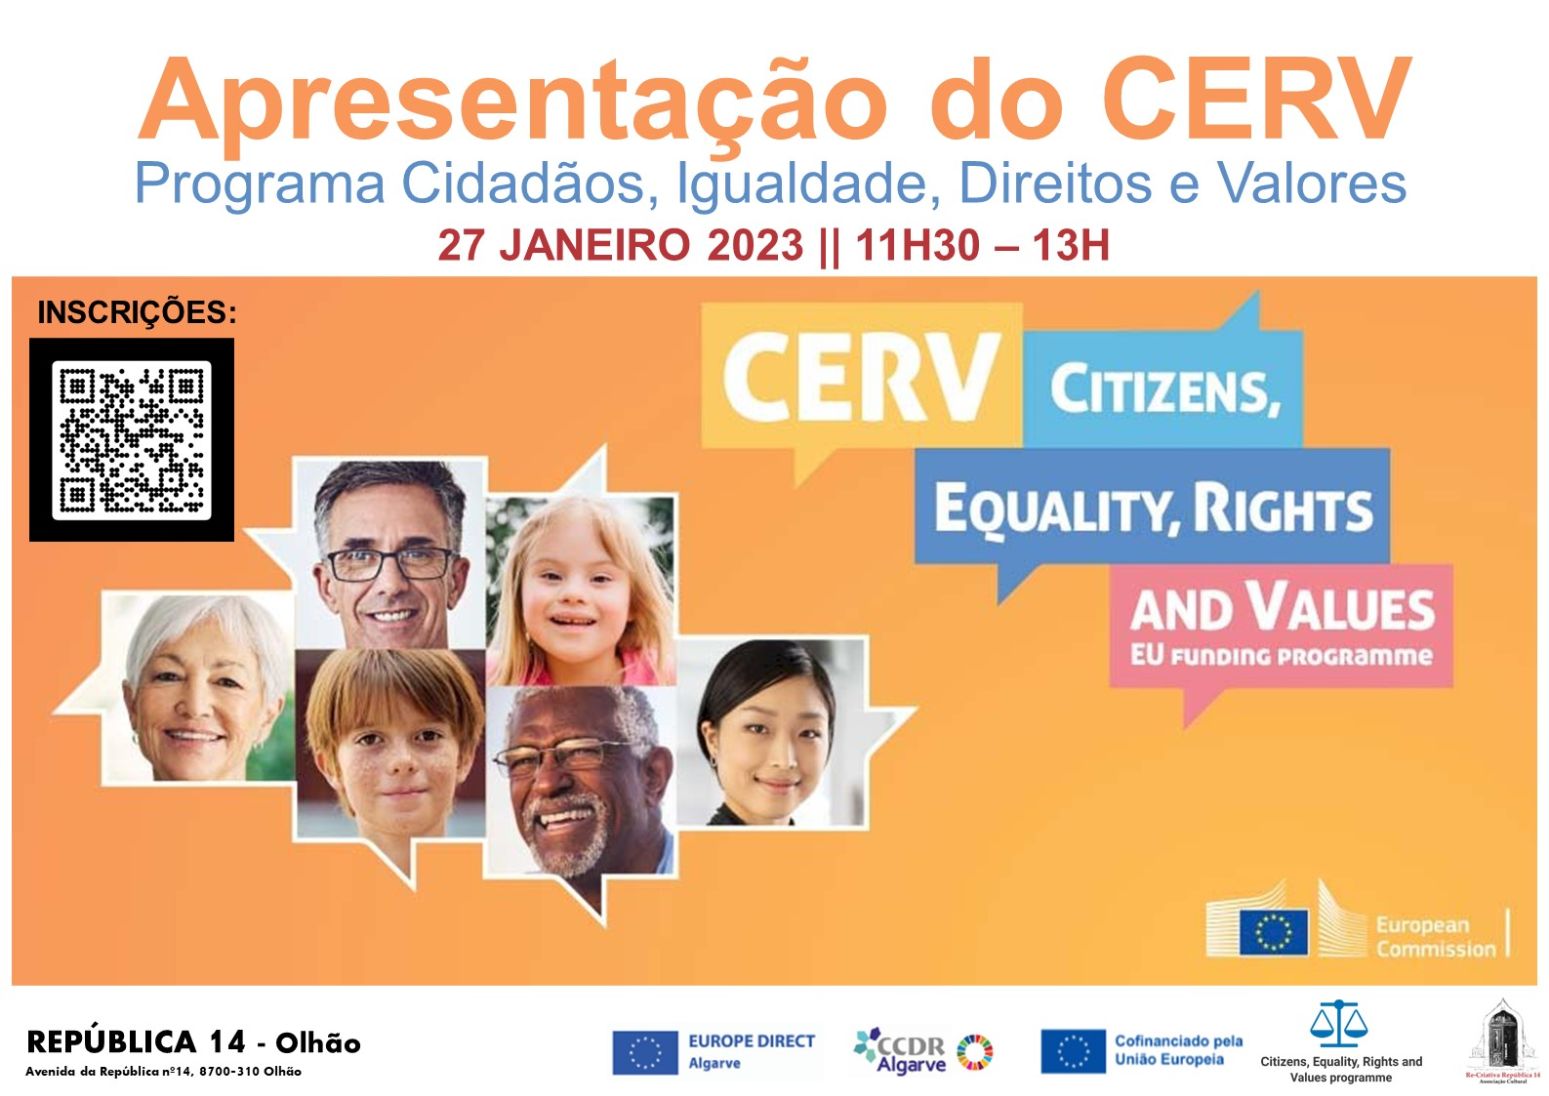 Programa Europeu CERV - Cidadãos, Igualdade, Direitos e Valores – Apresentado no Algarve